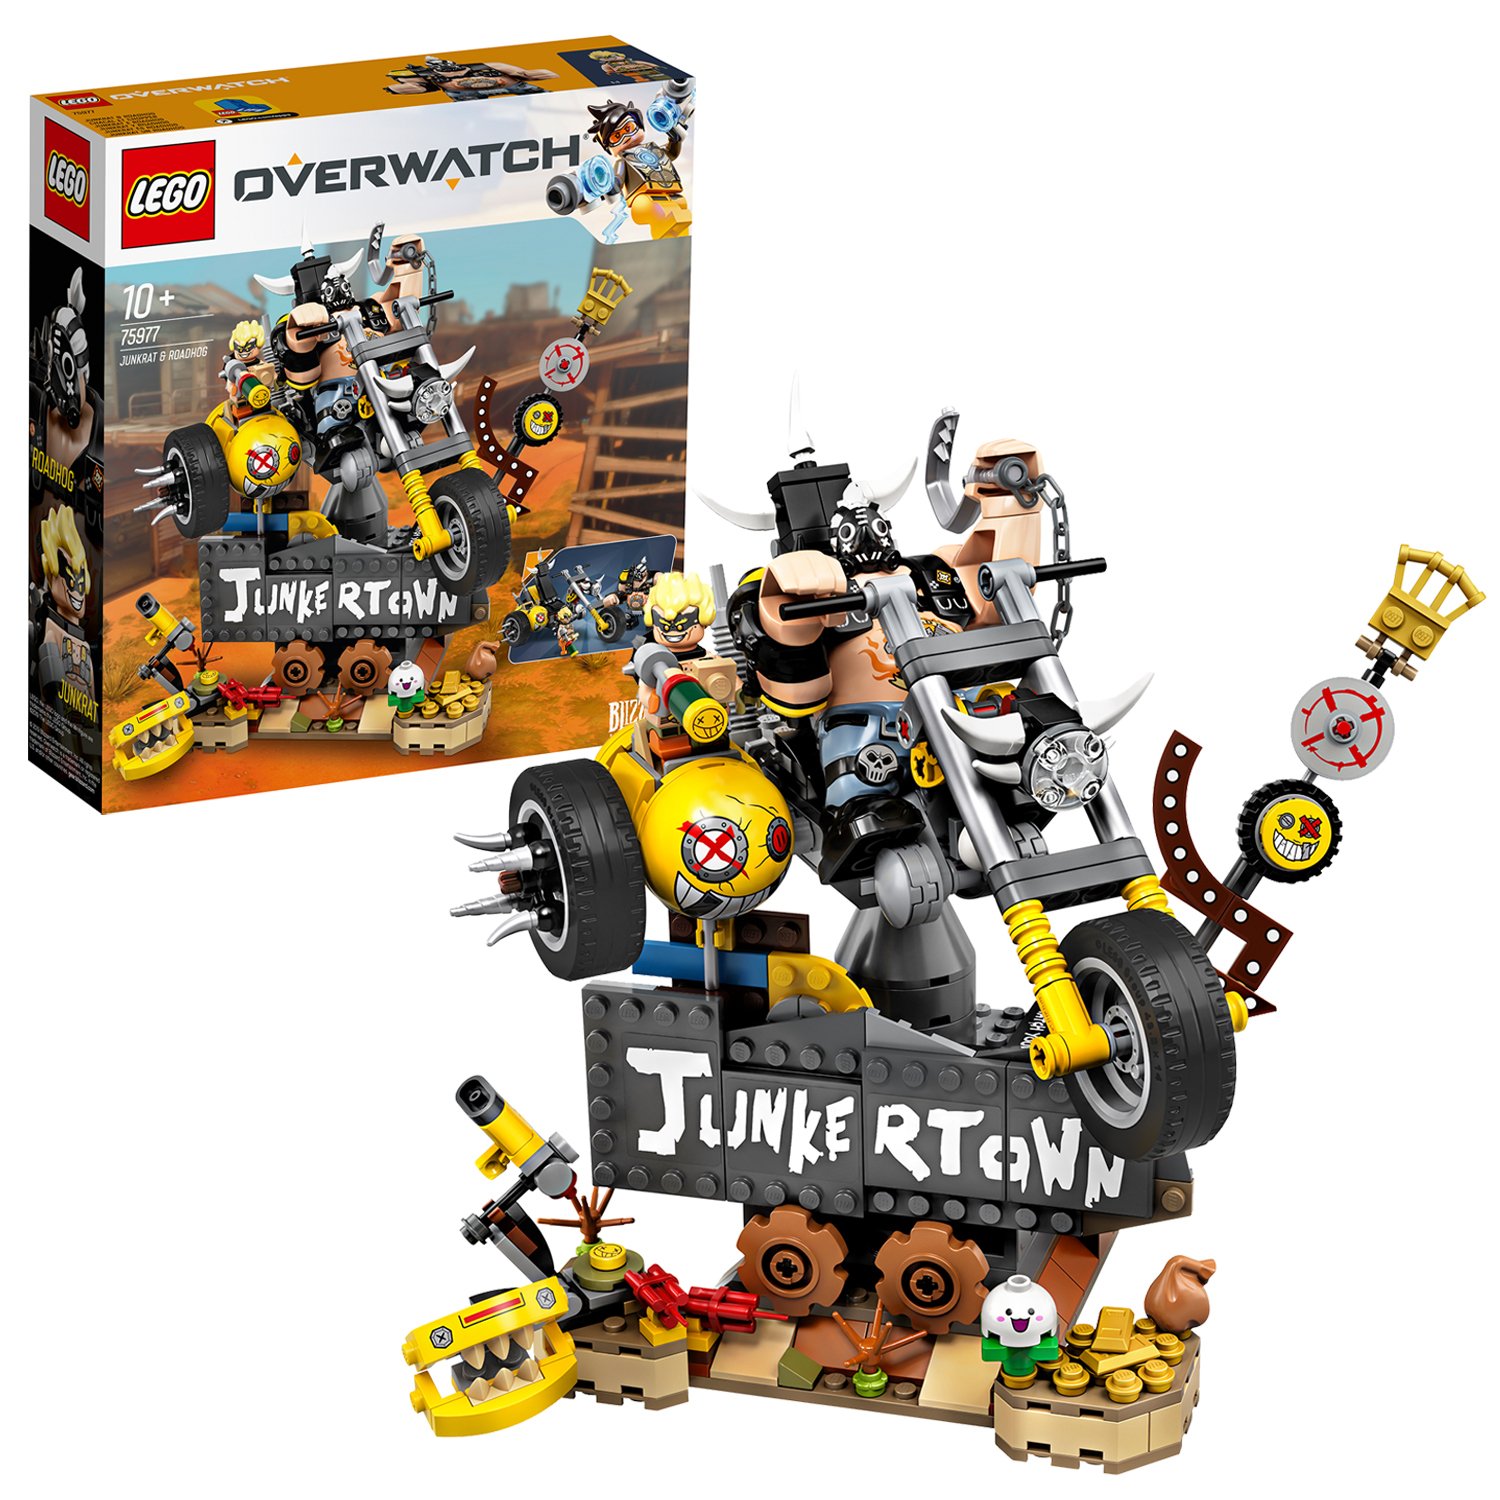 LEGO Overwatch Junkrat & Roadhog Character Figures Set 75977